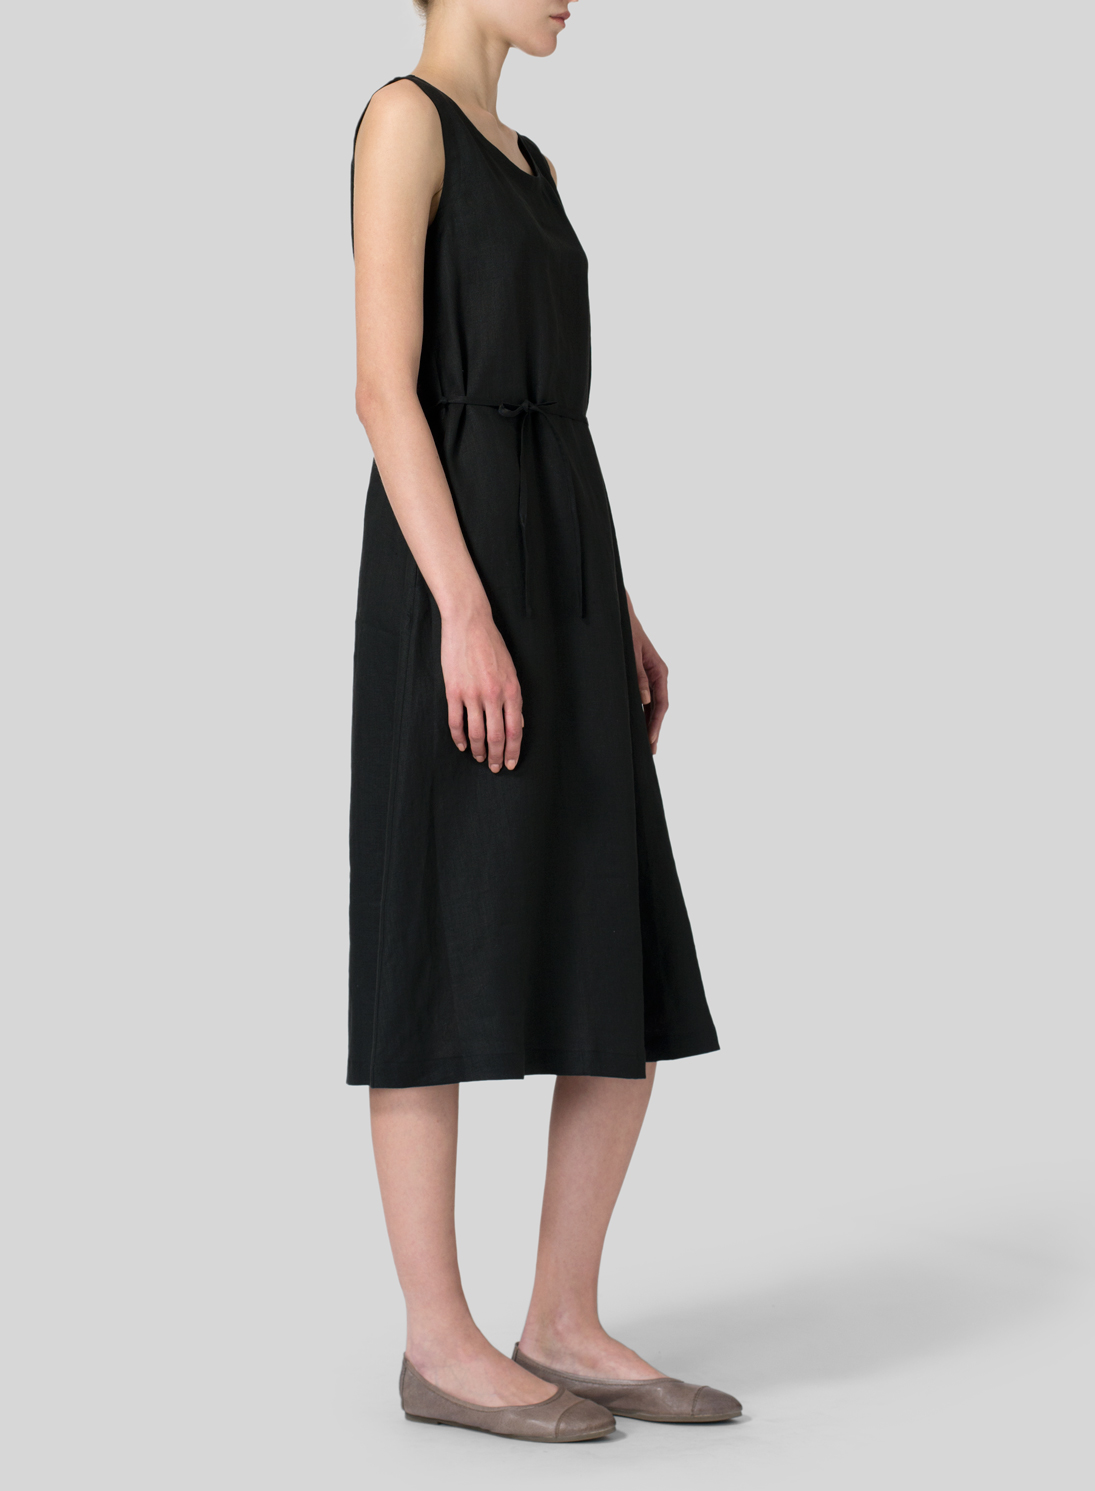 Linen A-Line Dress - Plus Size